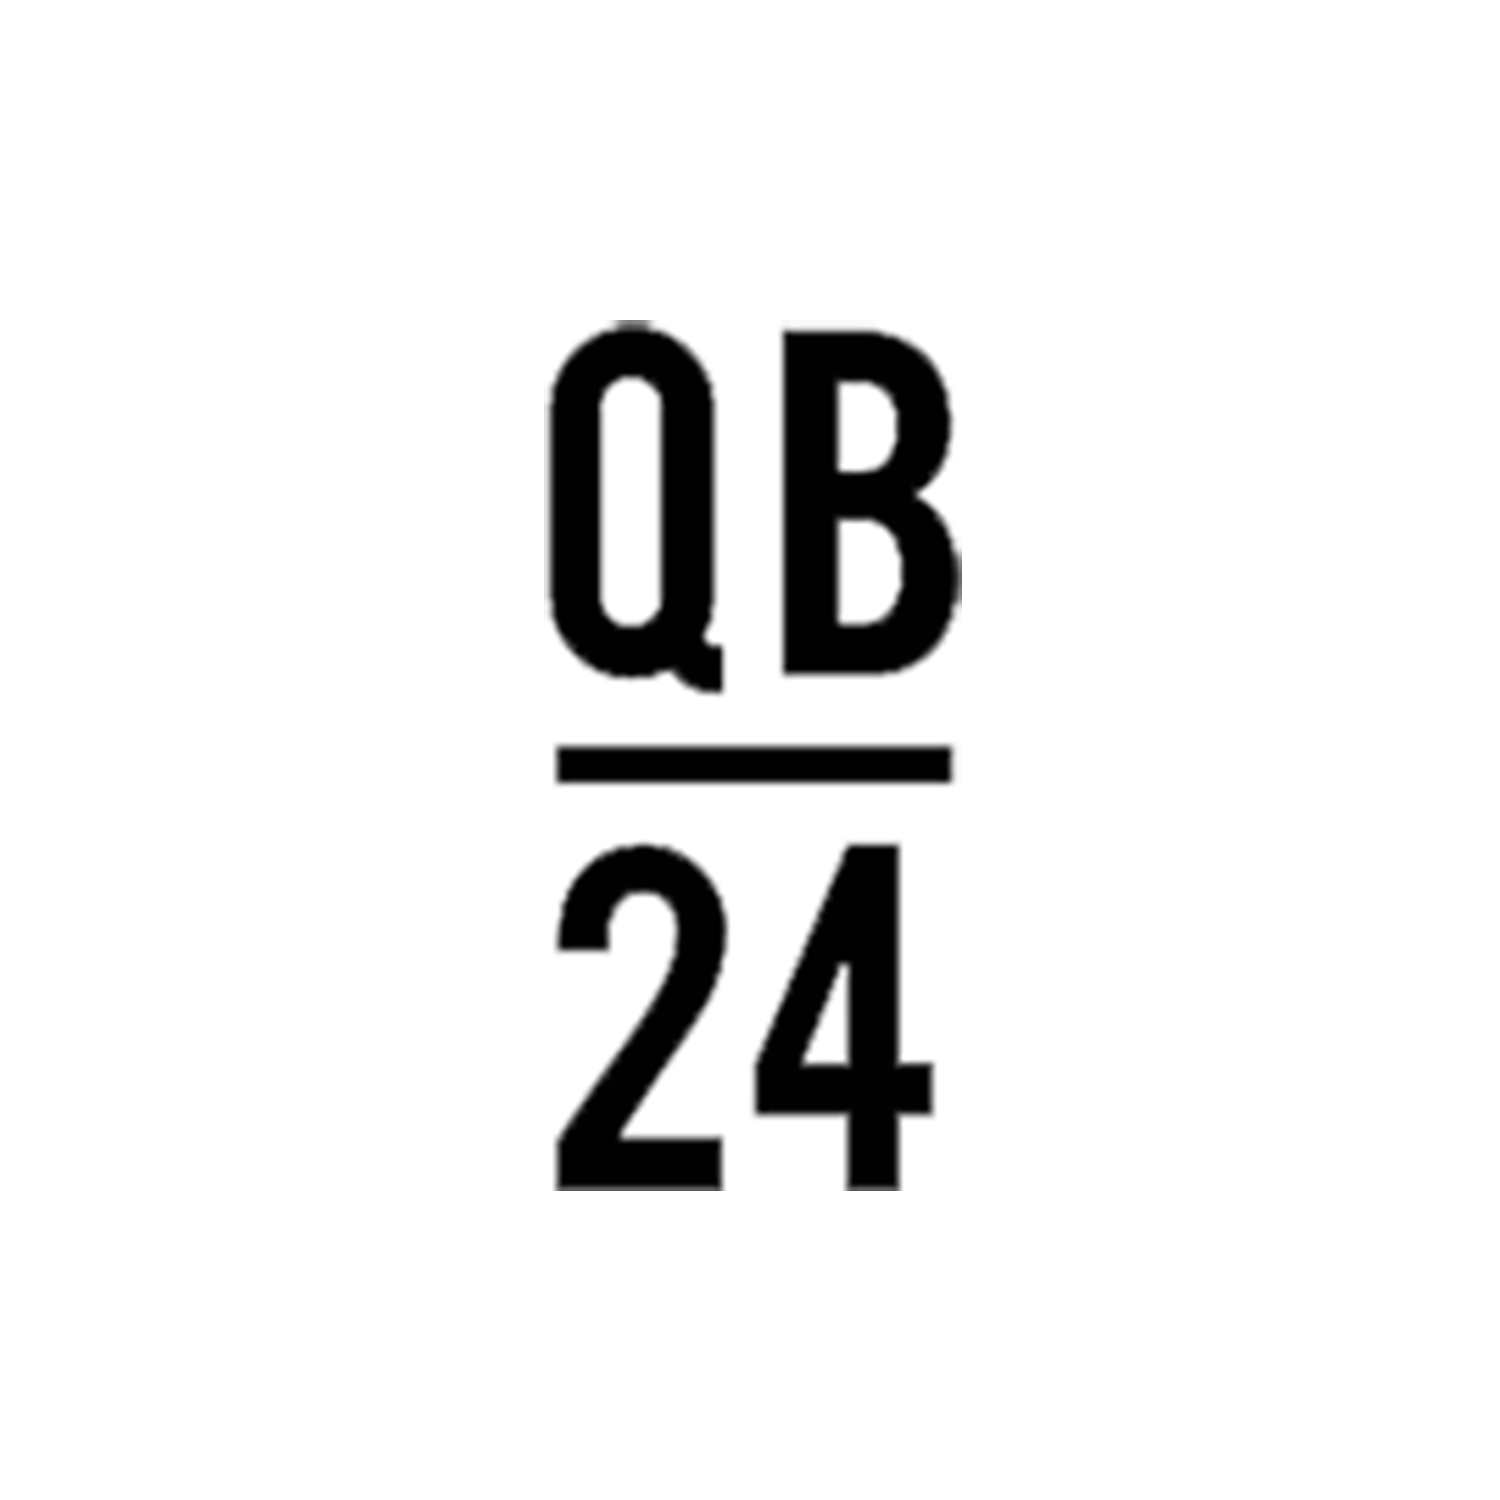 QB24